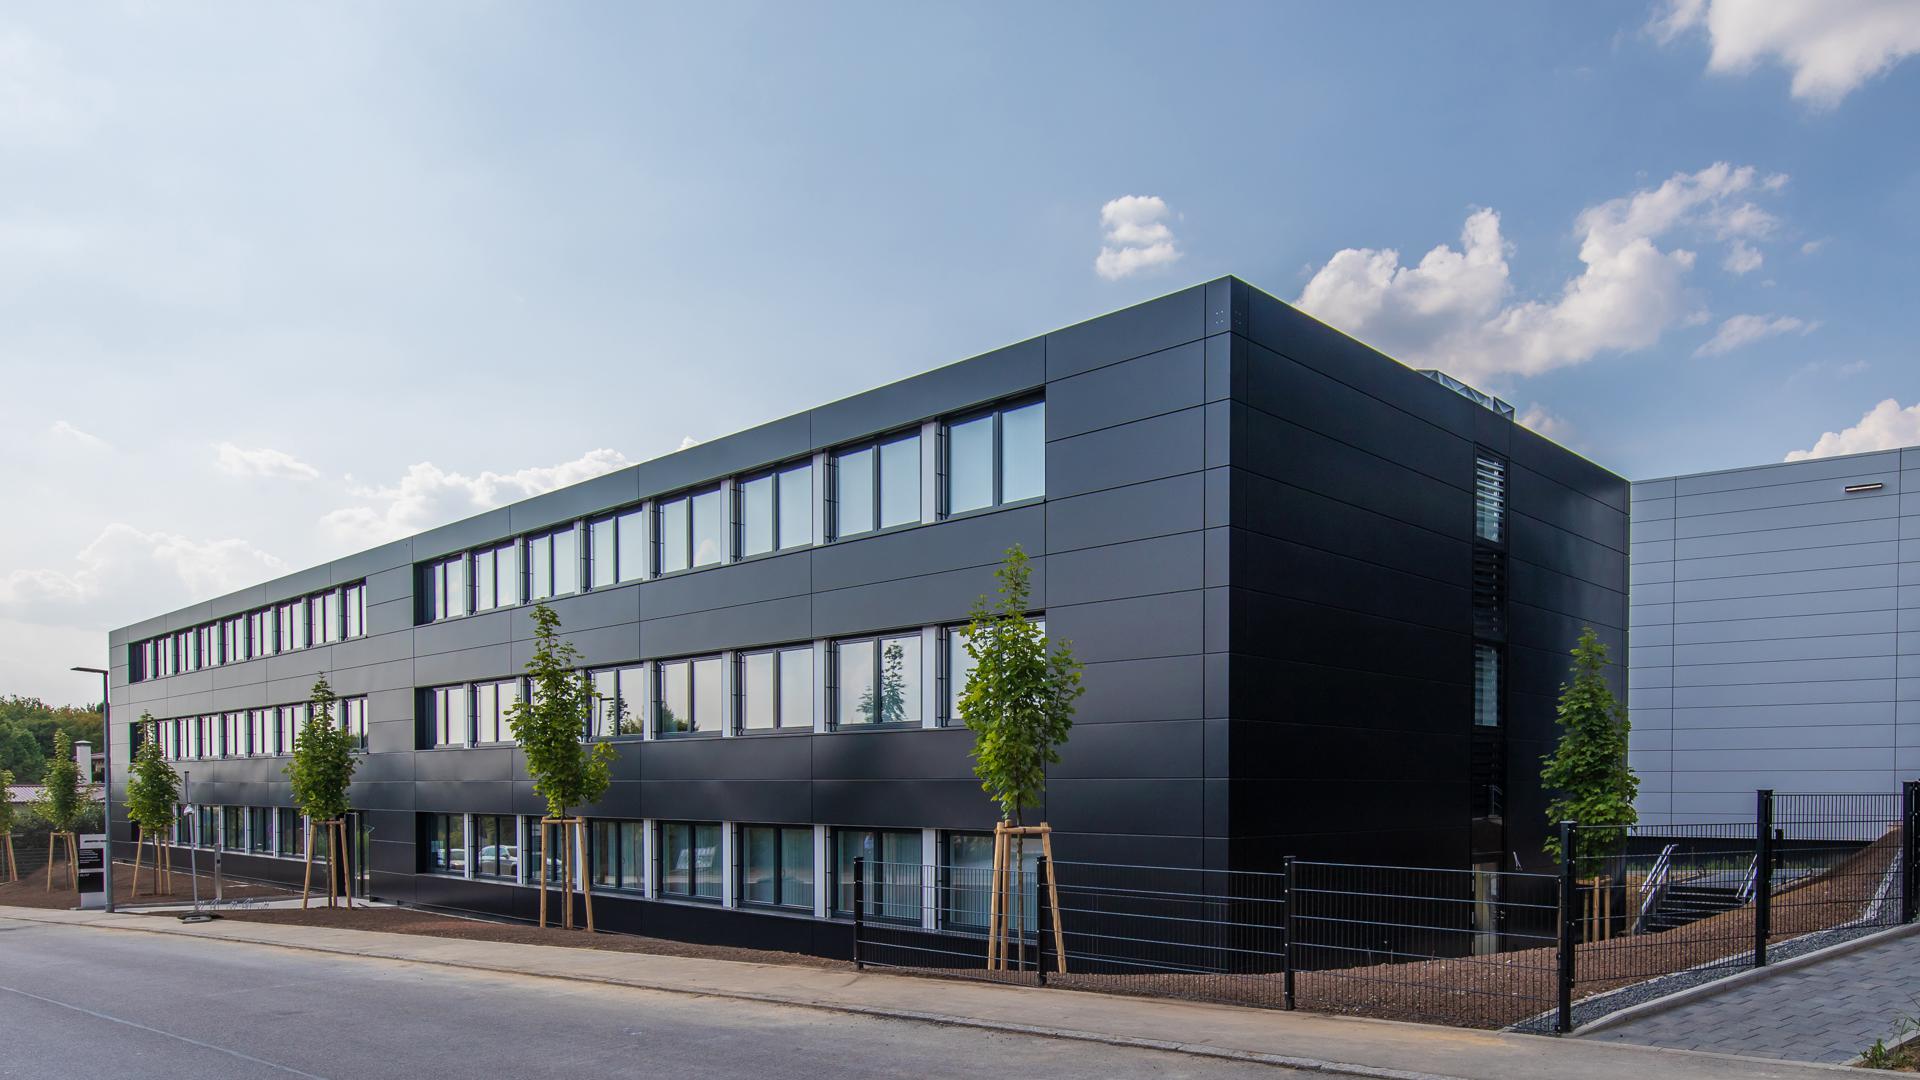 Für die Mercedes AMG GmbH realisierte Grinbold-Jodag in Affalterbach eine moderne, dreigeschossige Büroanlage, die den höchsten Ansprüchen an eine moderne Arbeitsumgebung entspricht.